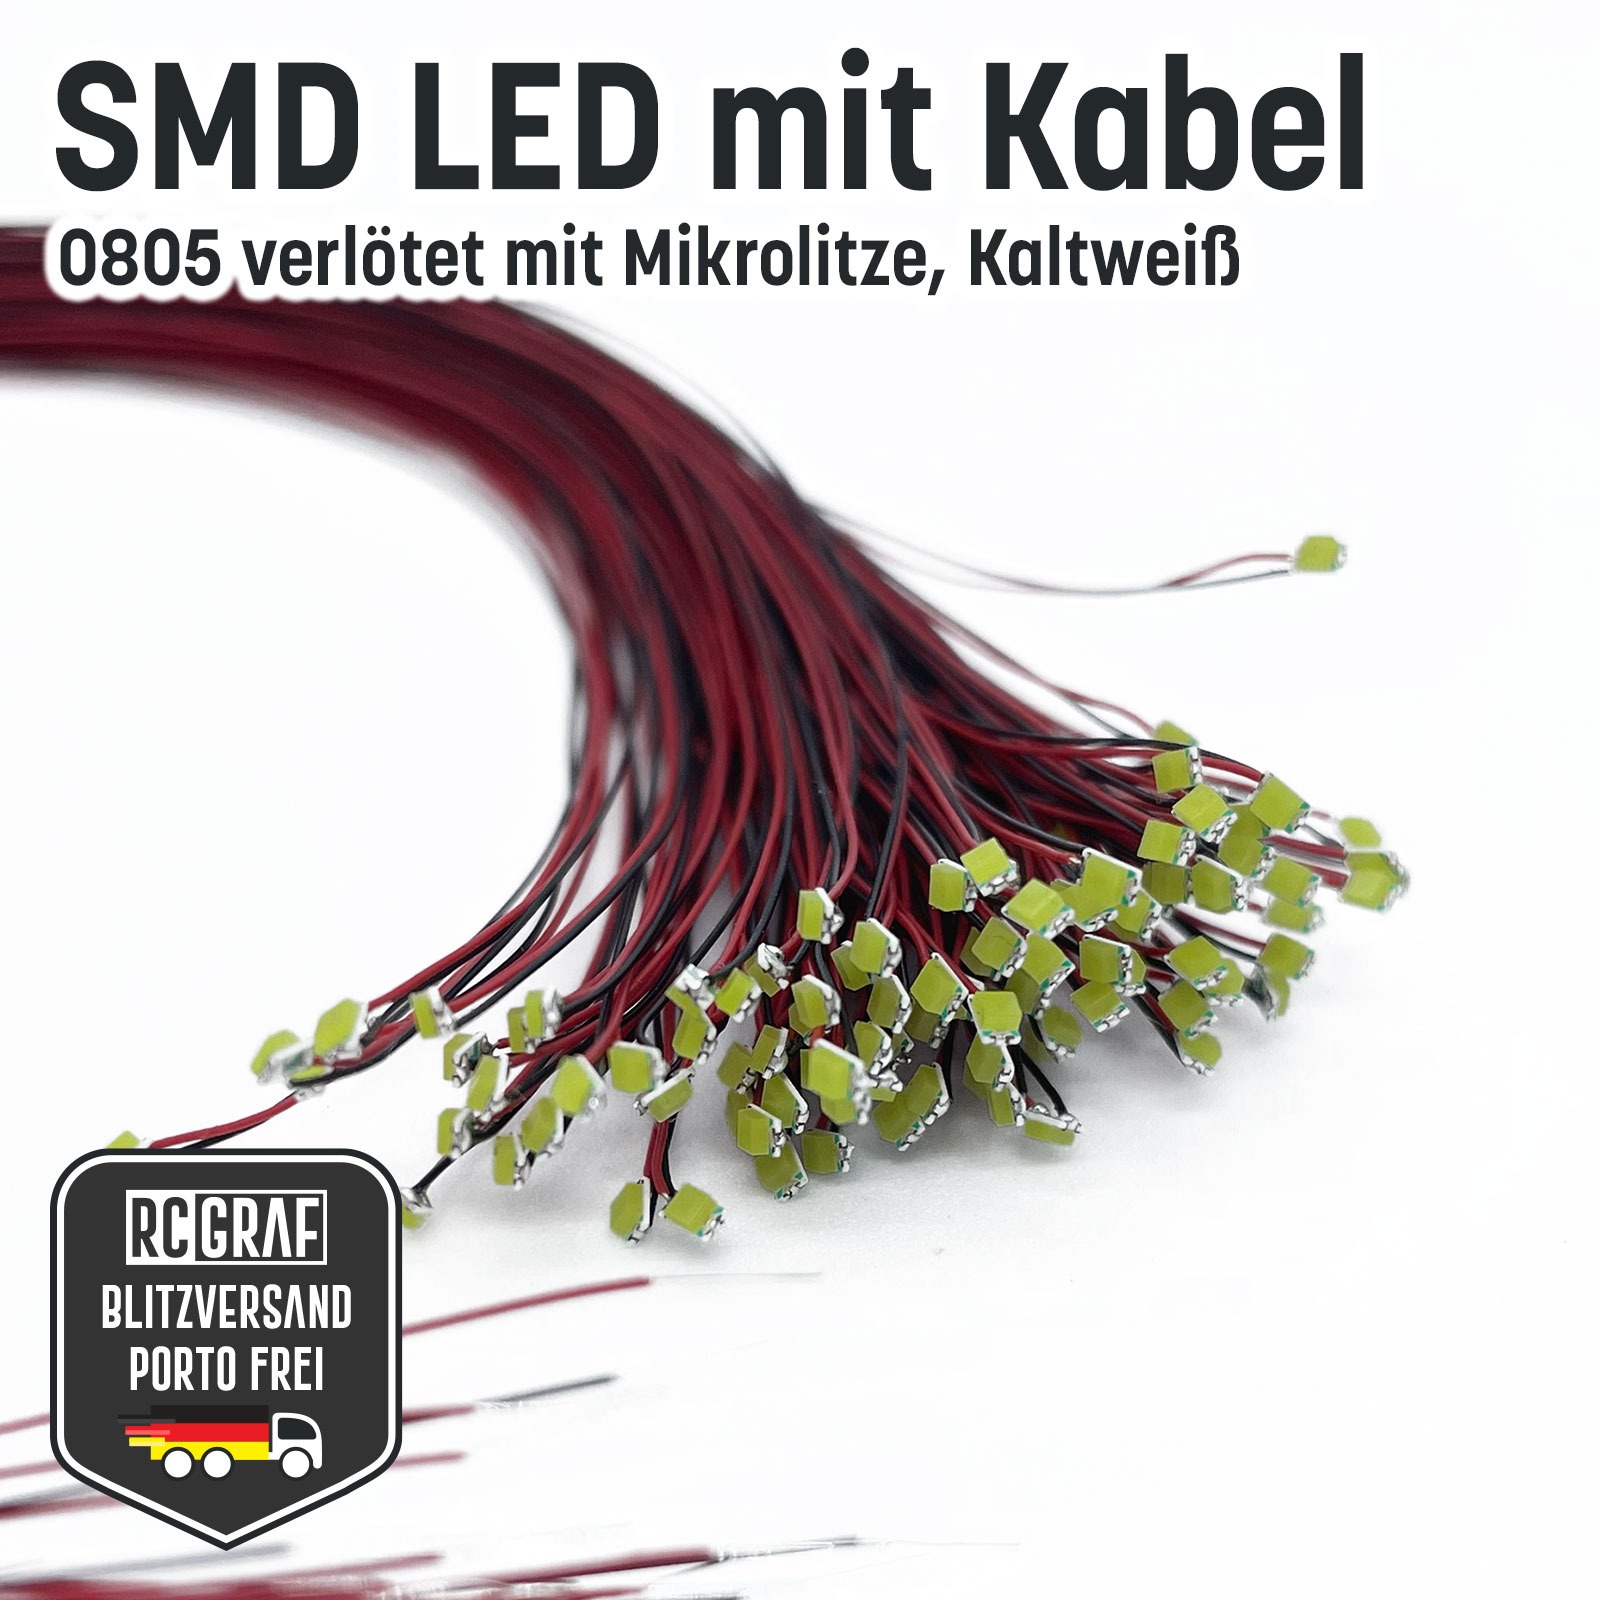 SMD LED 0805 Microlitze 30cm verlötet 7